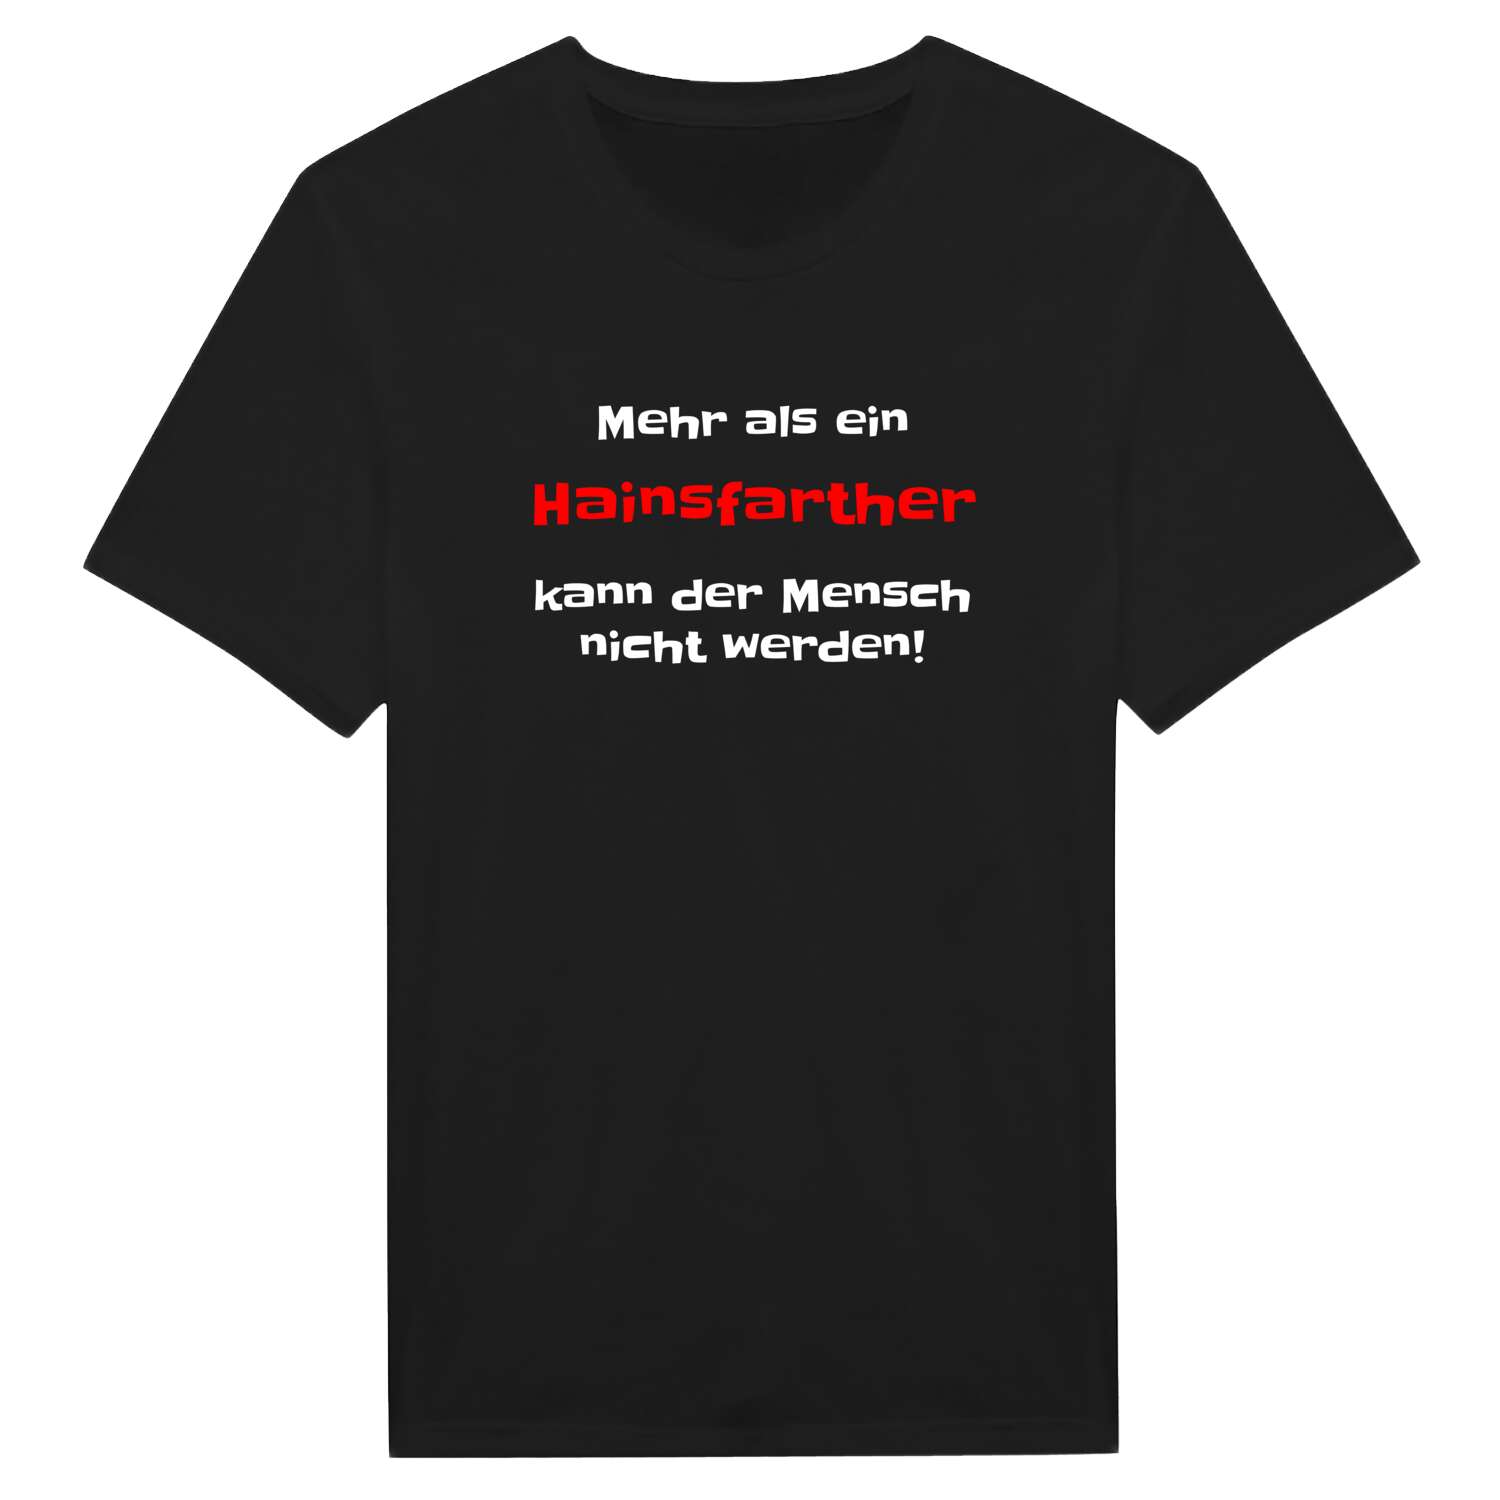 Hainsfarth T-Shirt »Mehr als ein«